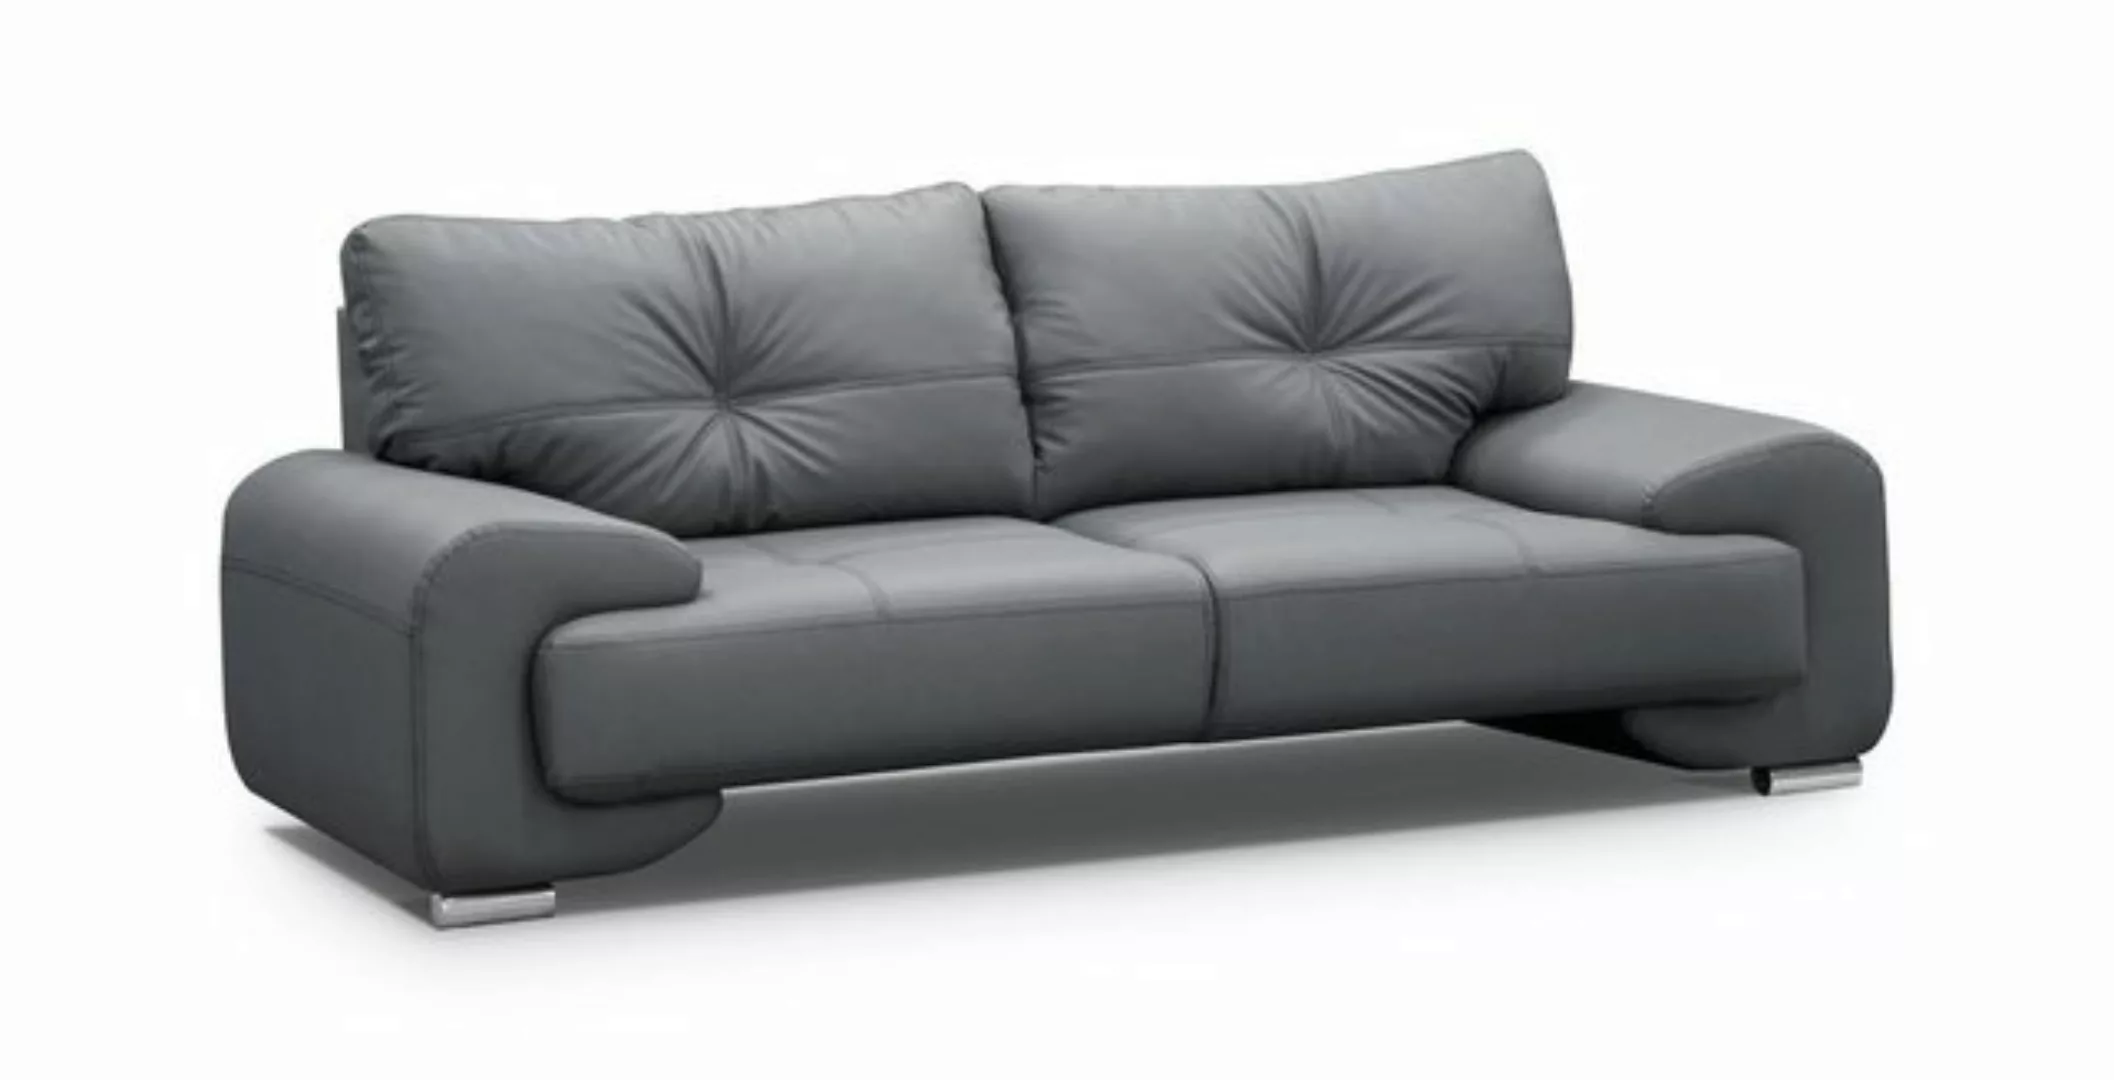 Beautysofa Sofa Dreisitzer Sofa Couch OMEGA Neu, Die Lieferung gilt für die günstig online kaufen